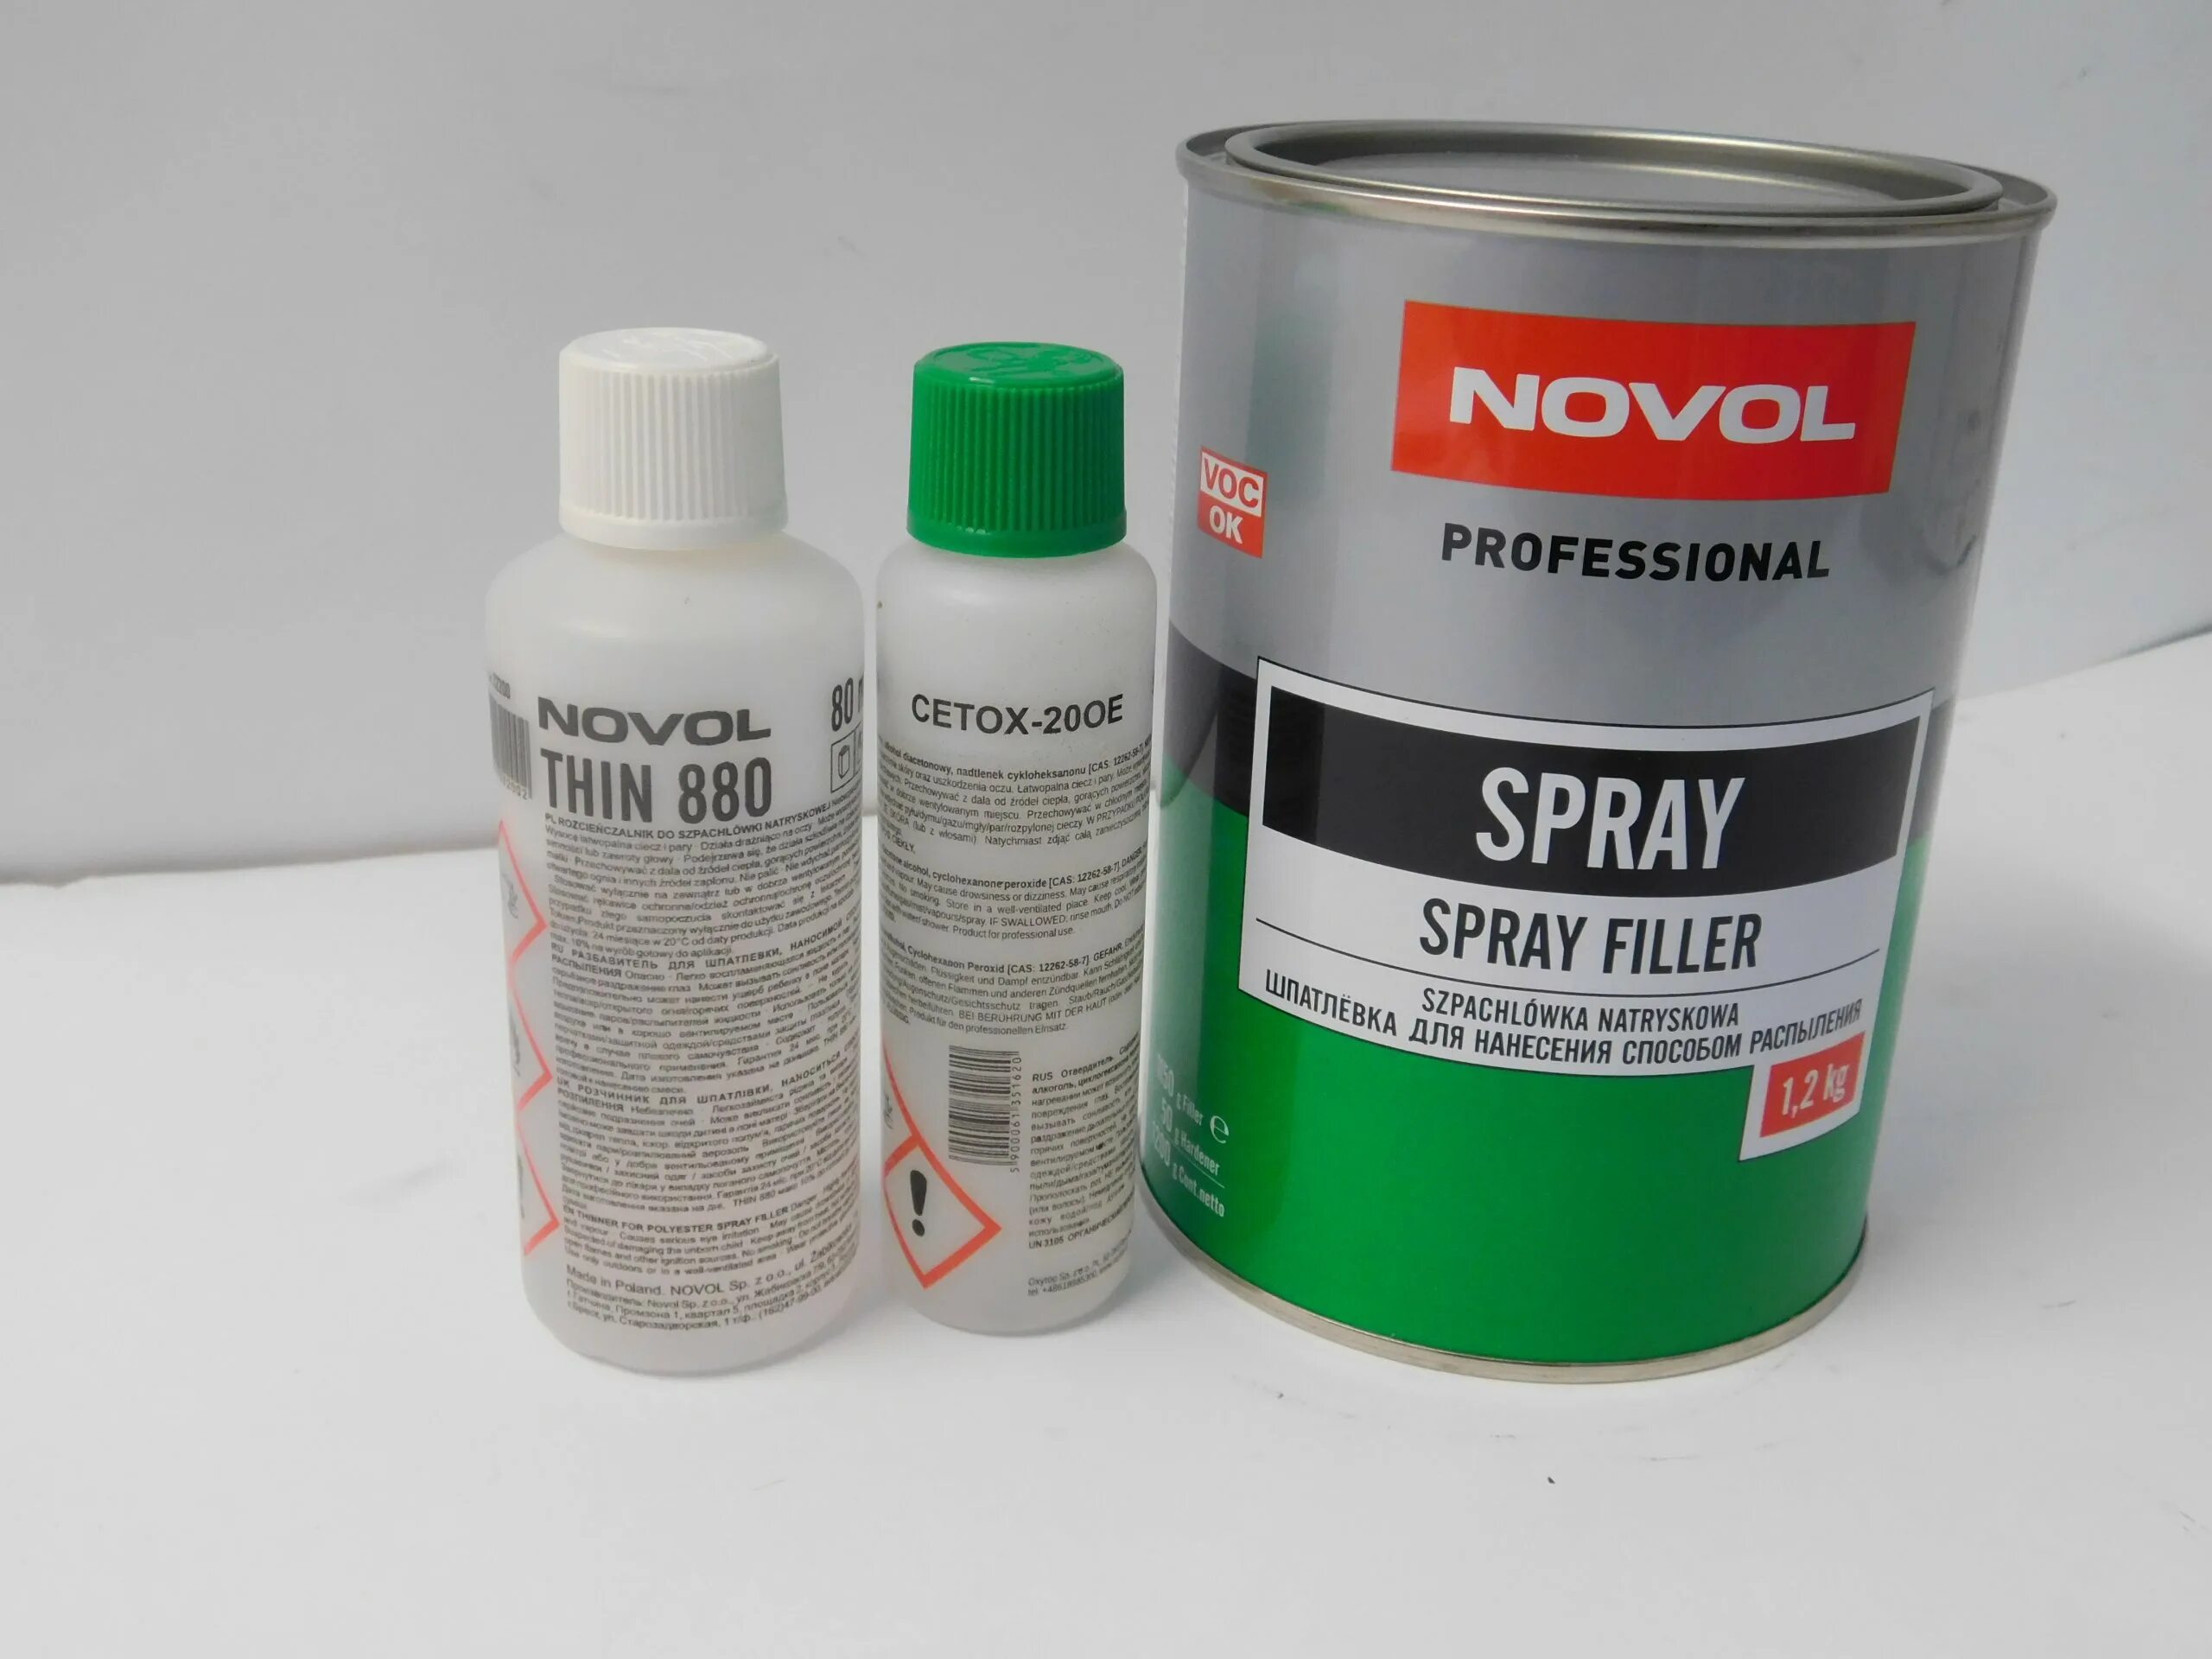 Жидкая шпаклевка. NOVOL 1201 шпаклевка жидкая. Жидкая шпатлевка NOVOL Spray Filler. NOVOL professional Spray line. NOVOL 90407 аэрозоль.